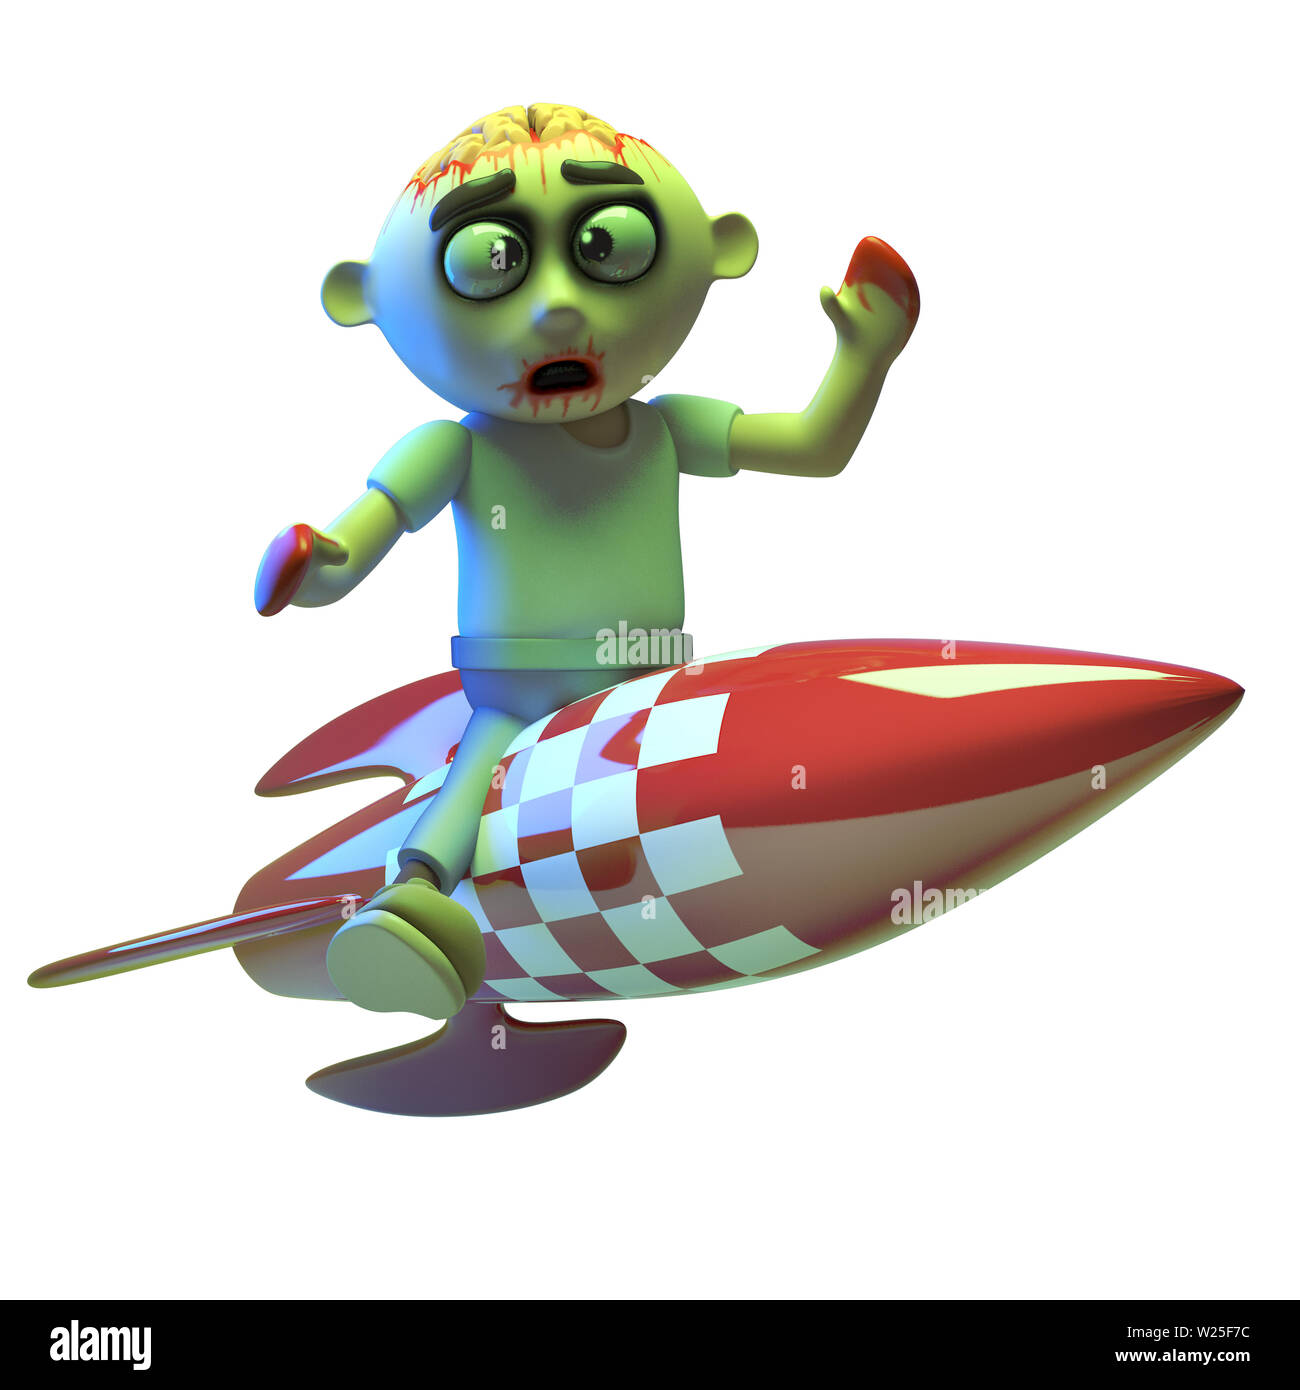 Peur zombie monster équitation une fusée spatiale, illustration 3D render Banque D'Images